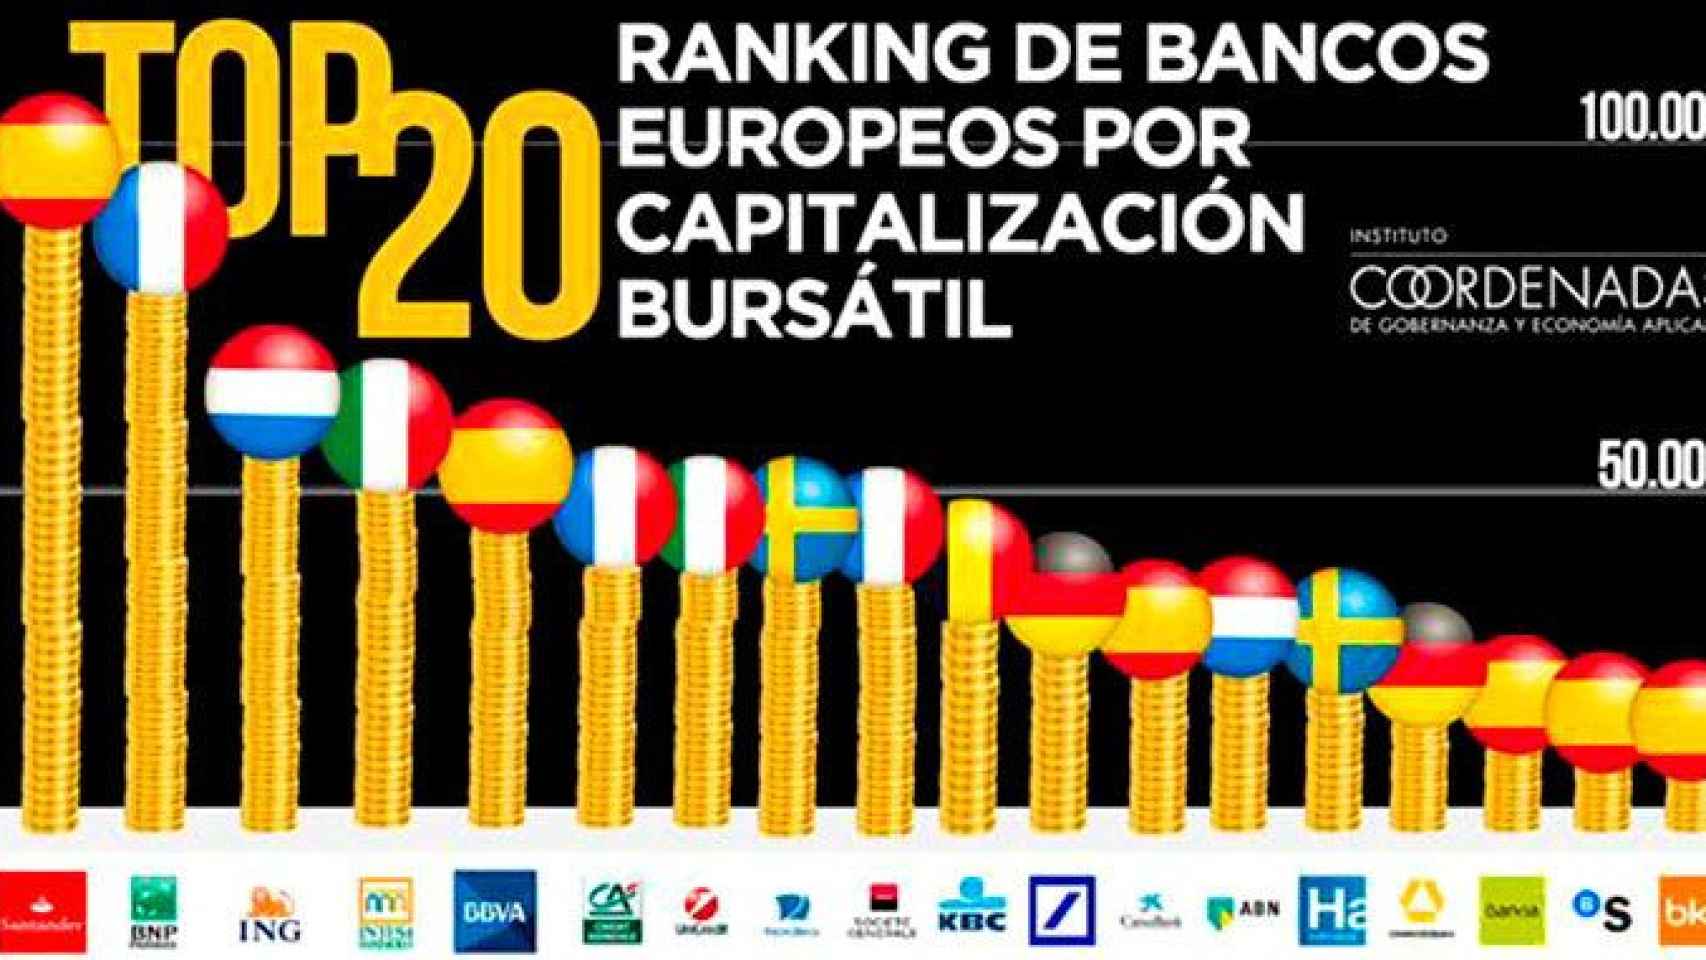 Banco Santander es el primer banco europeo en capitalización bursátil / INSTITUTO COORDENADAS